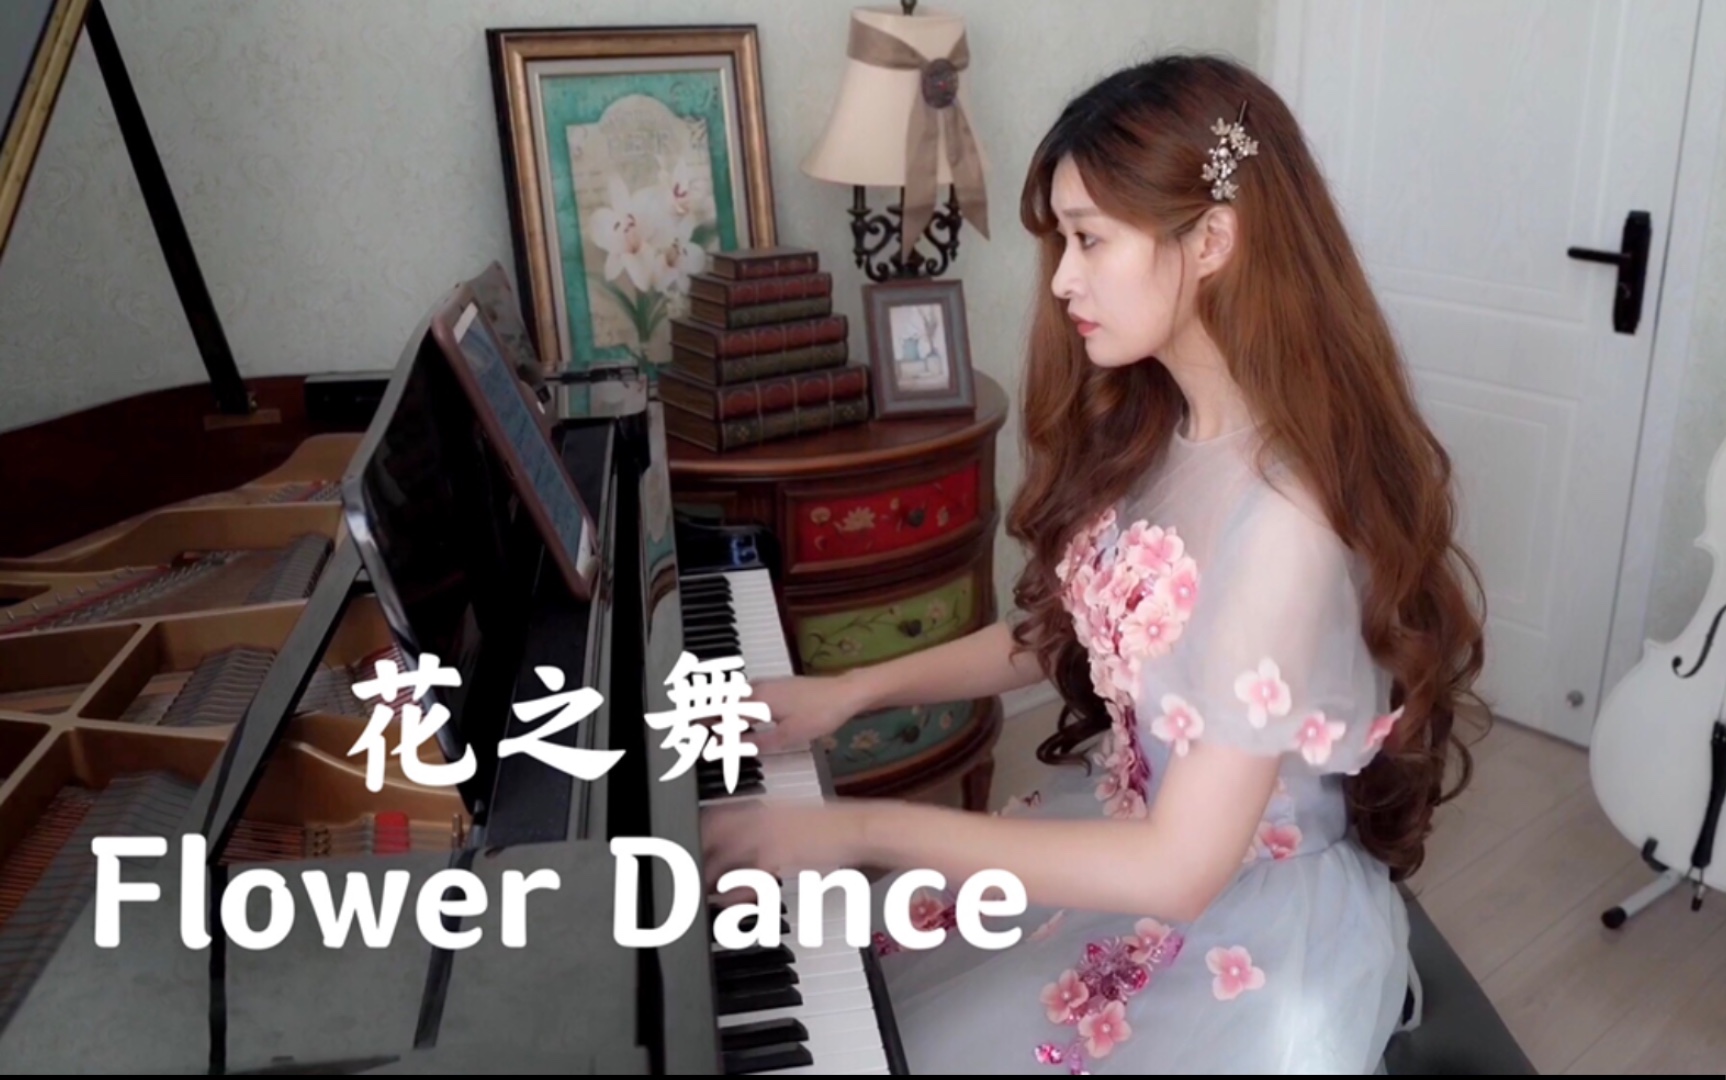 【钢琴】极限还原《花之舞》Flower Dance 钢琴版